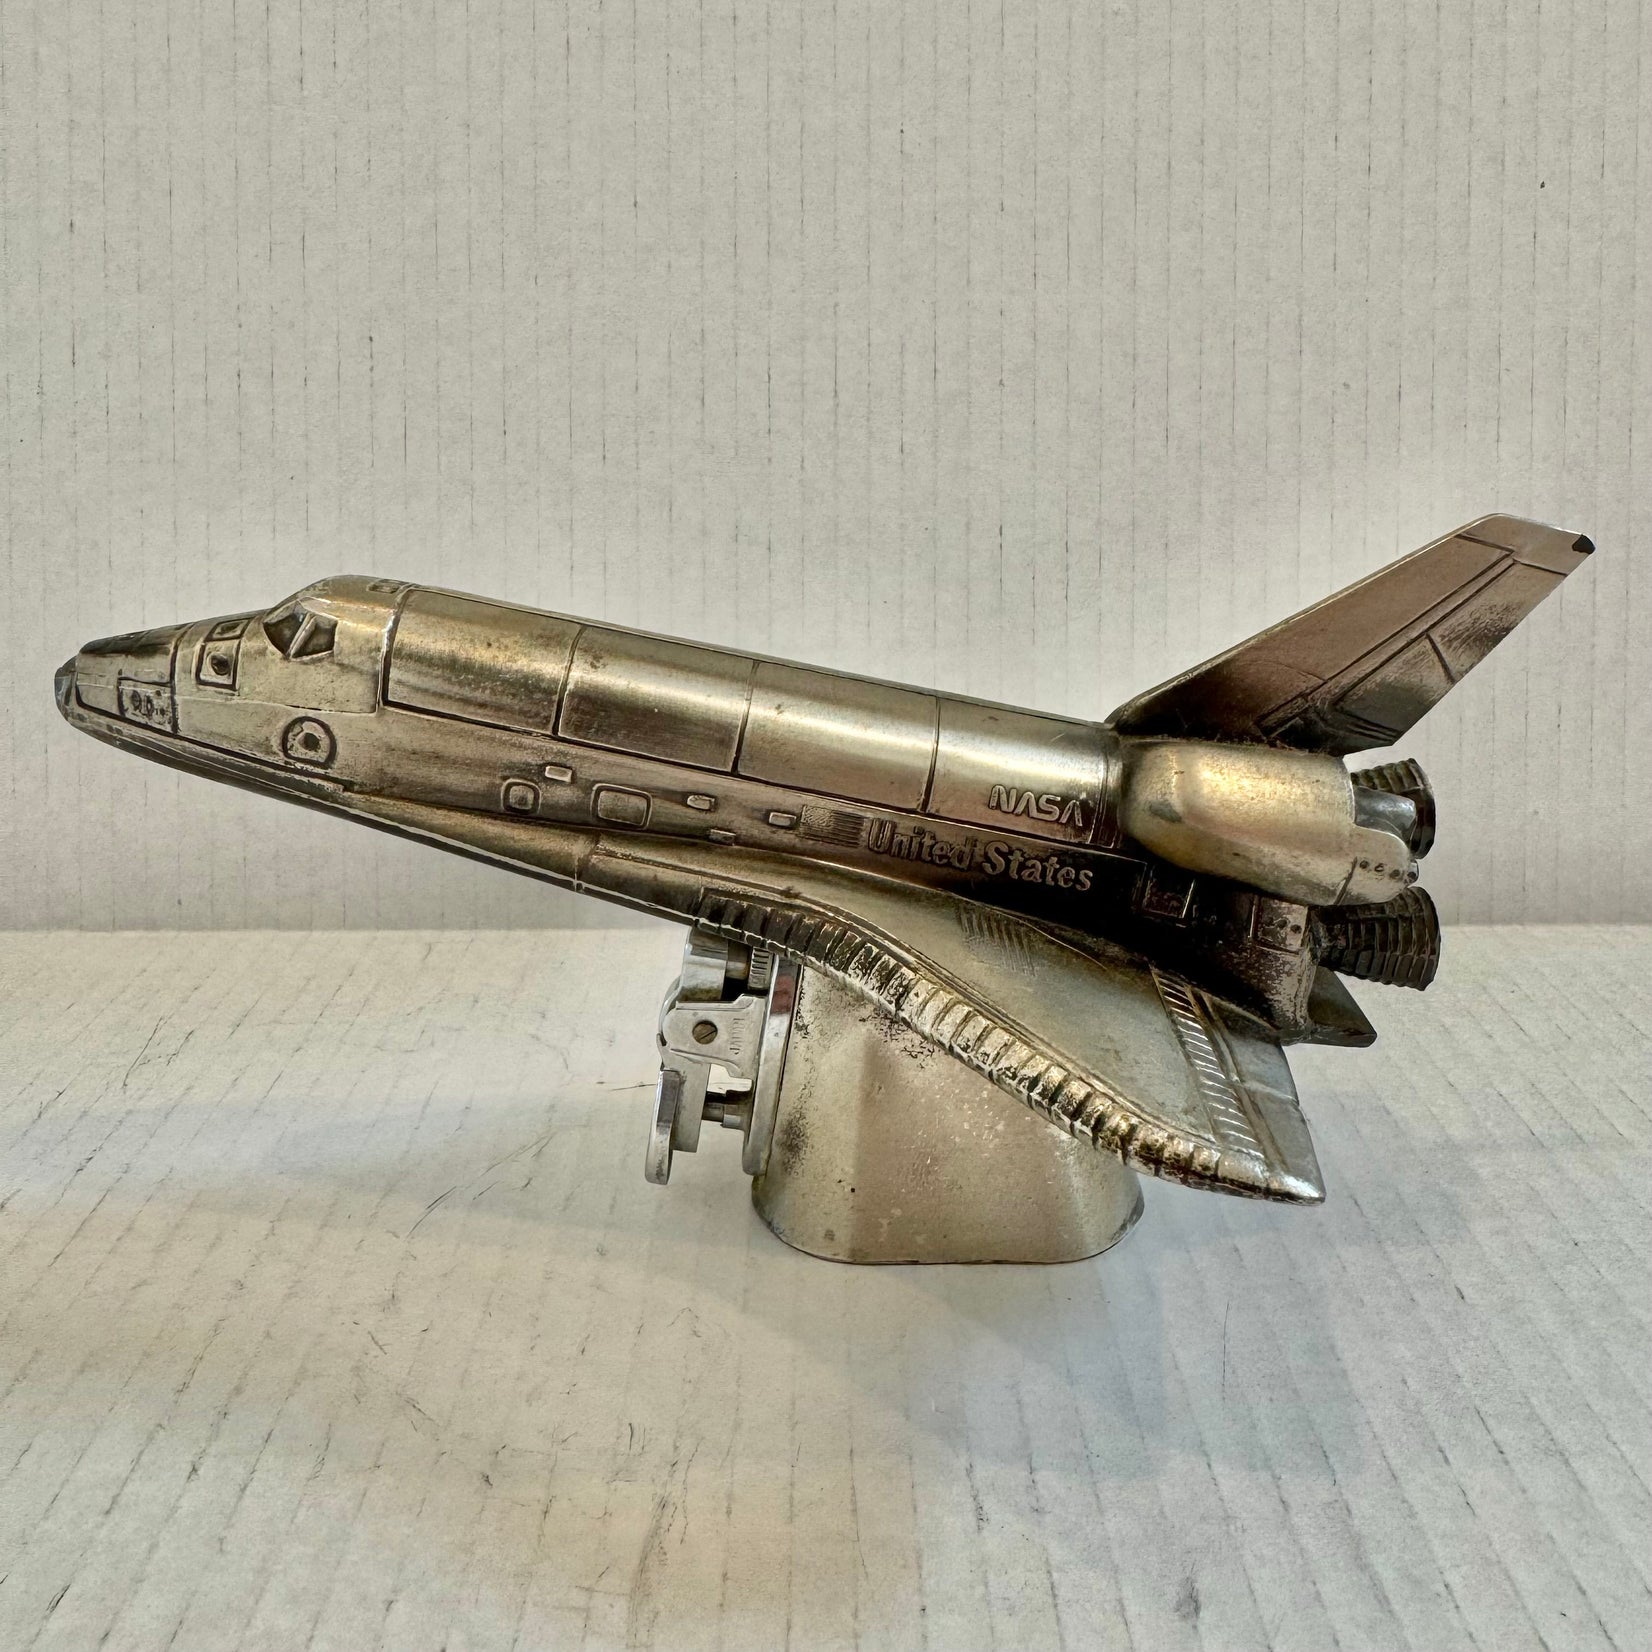 Nasa Space Shuttle Lighter, 1980s Japan